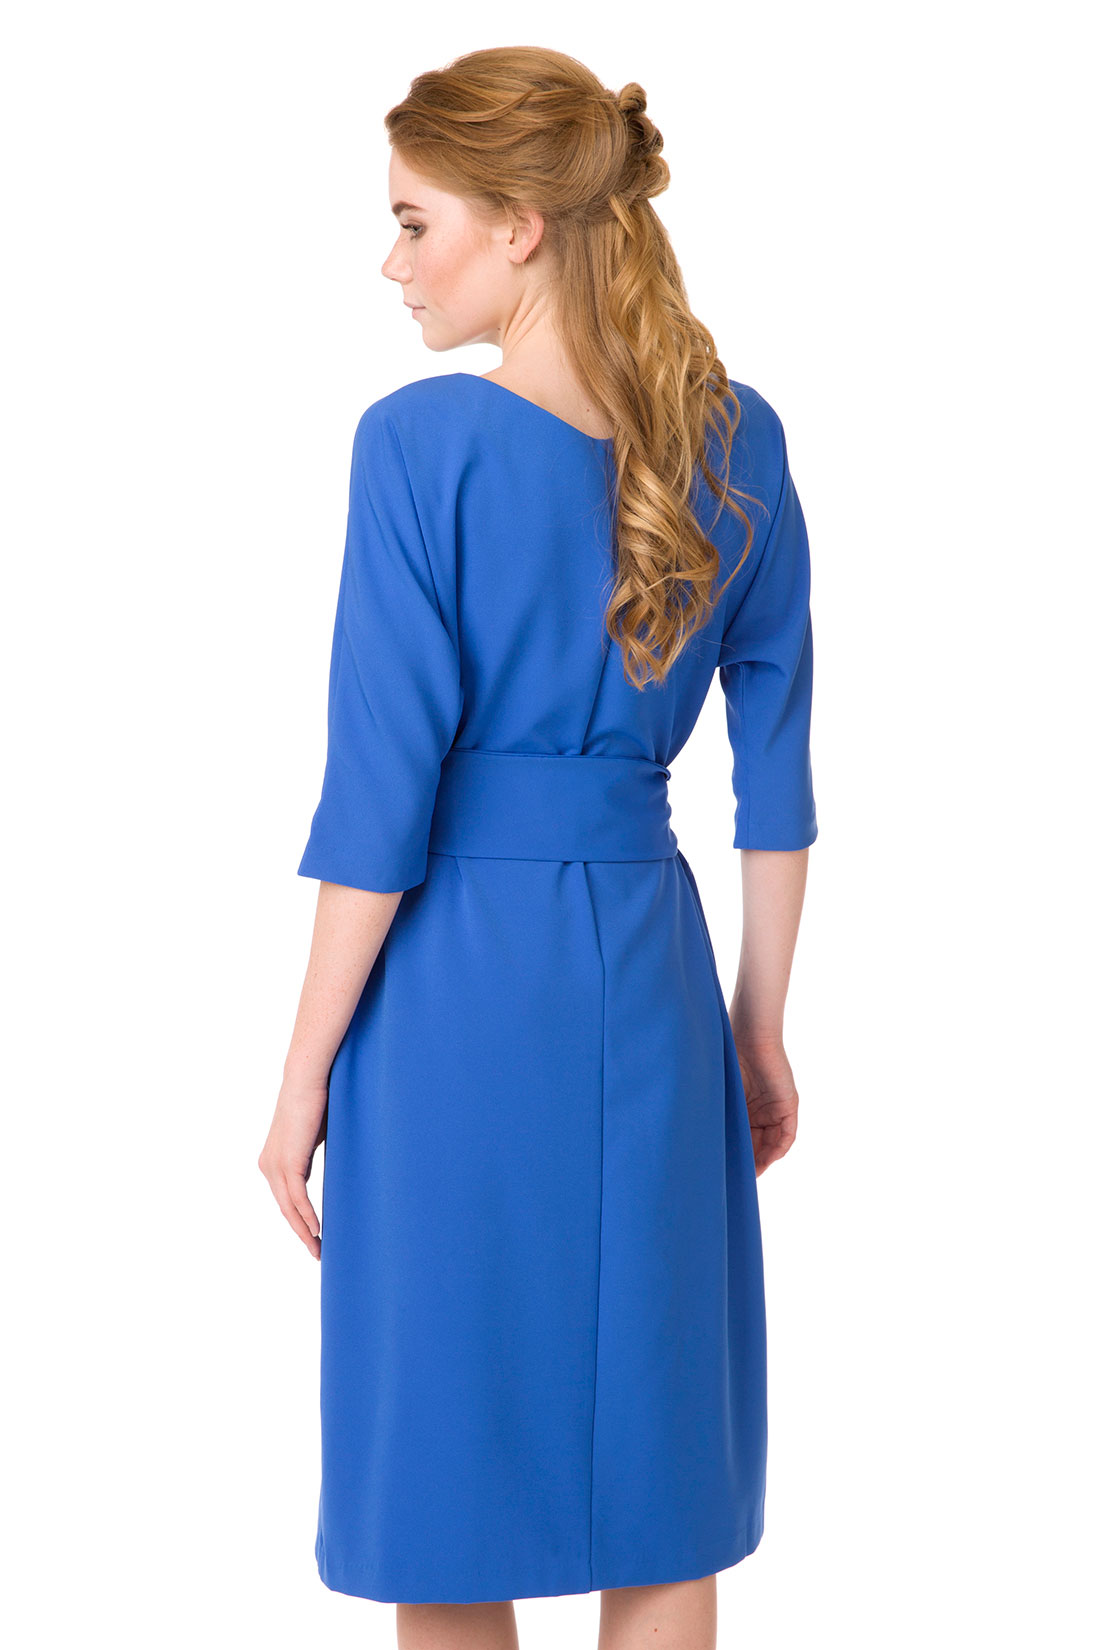 Платье с широким поясом (арт. baon B457024), размер XXL, цвет синий Платье с широким поясом (арт. baon B457024) - фото 2